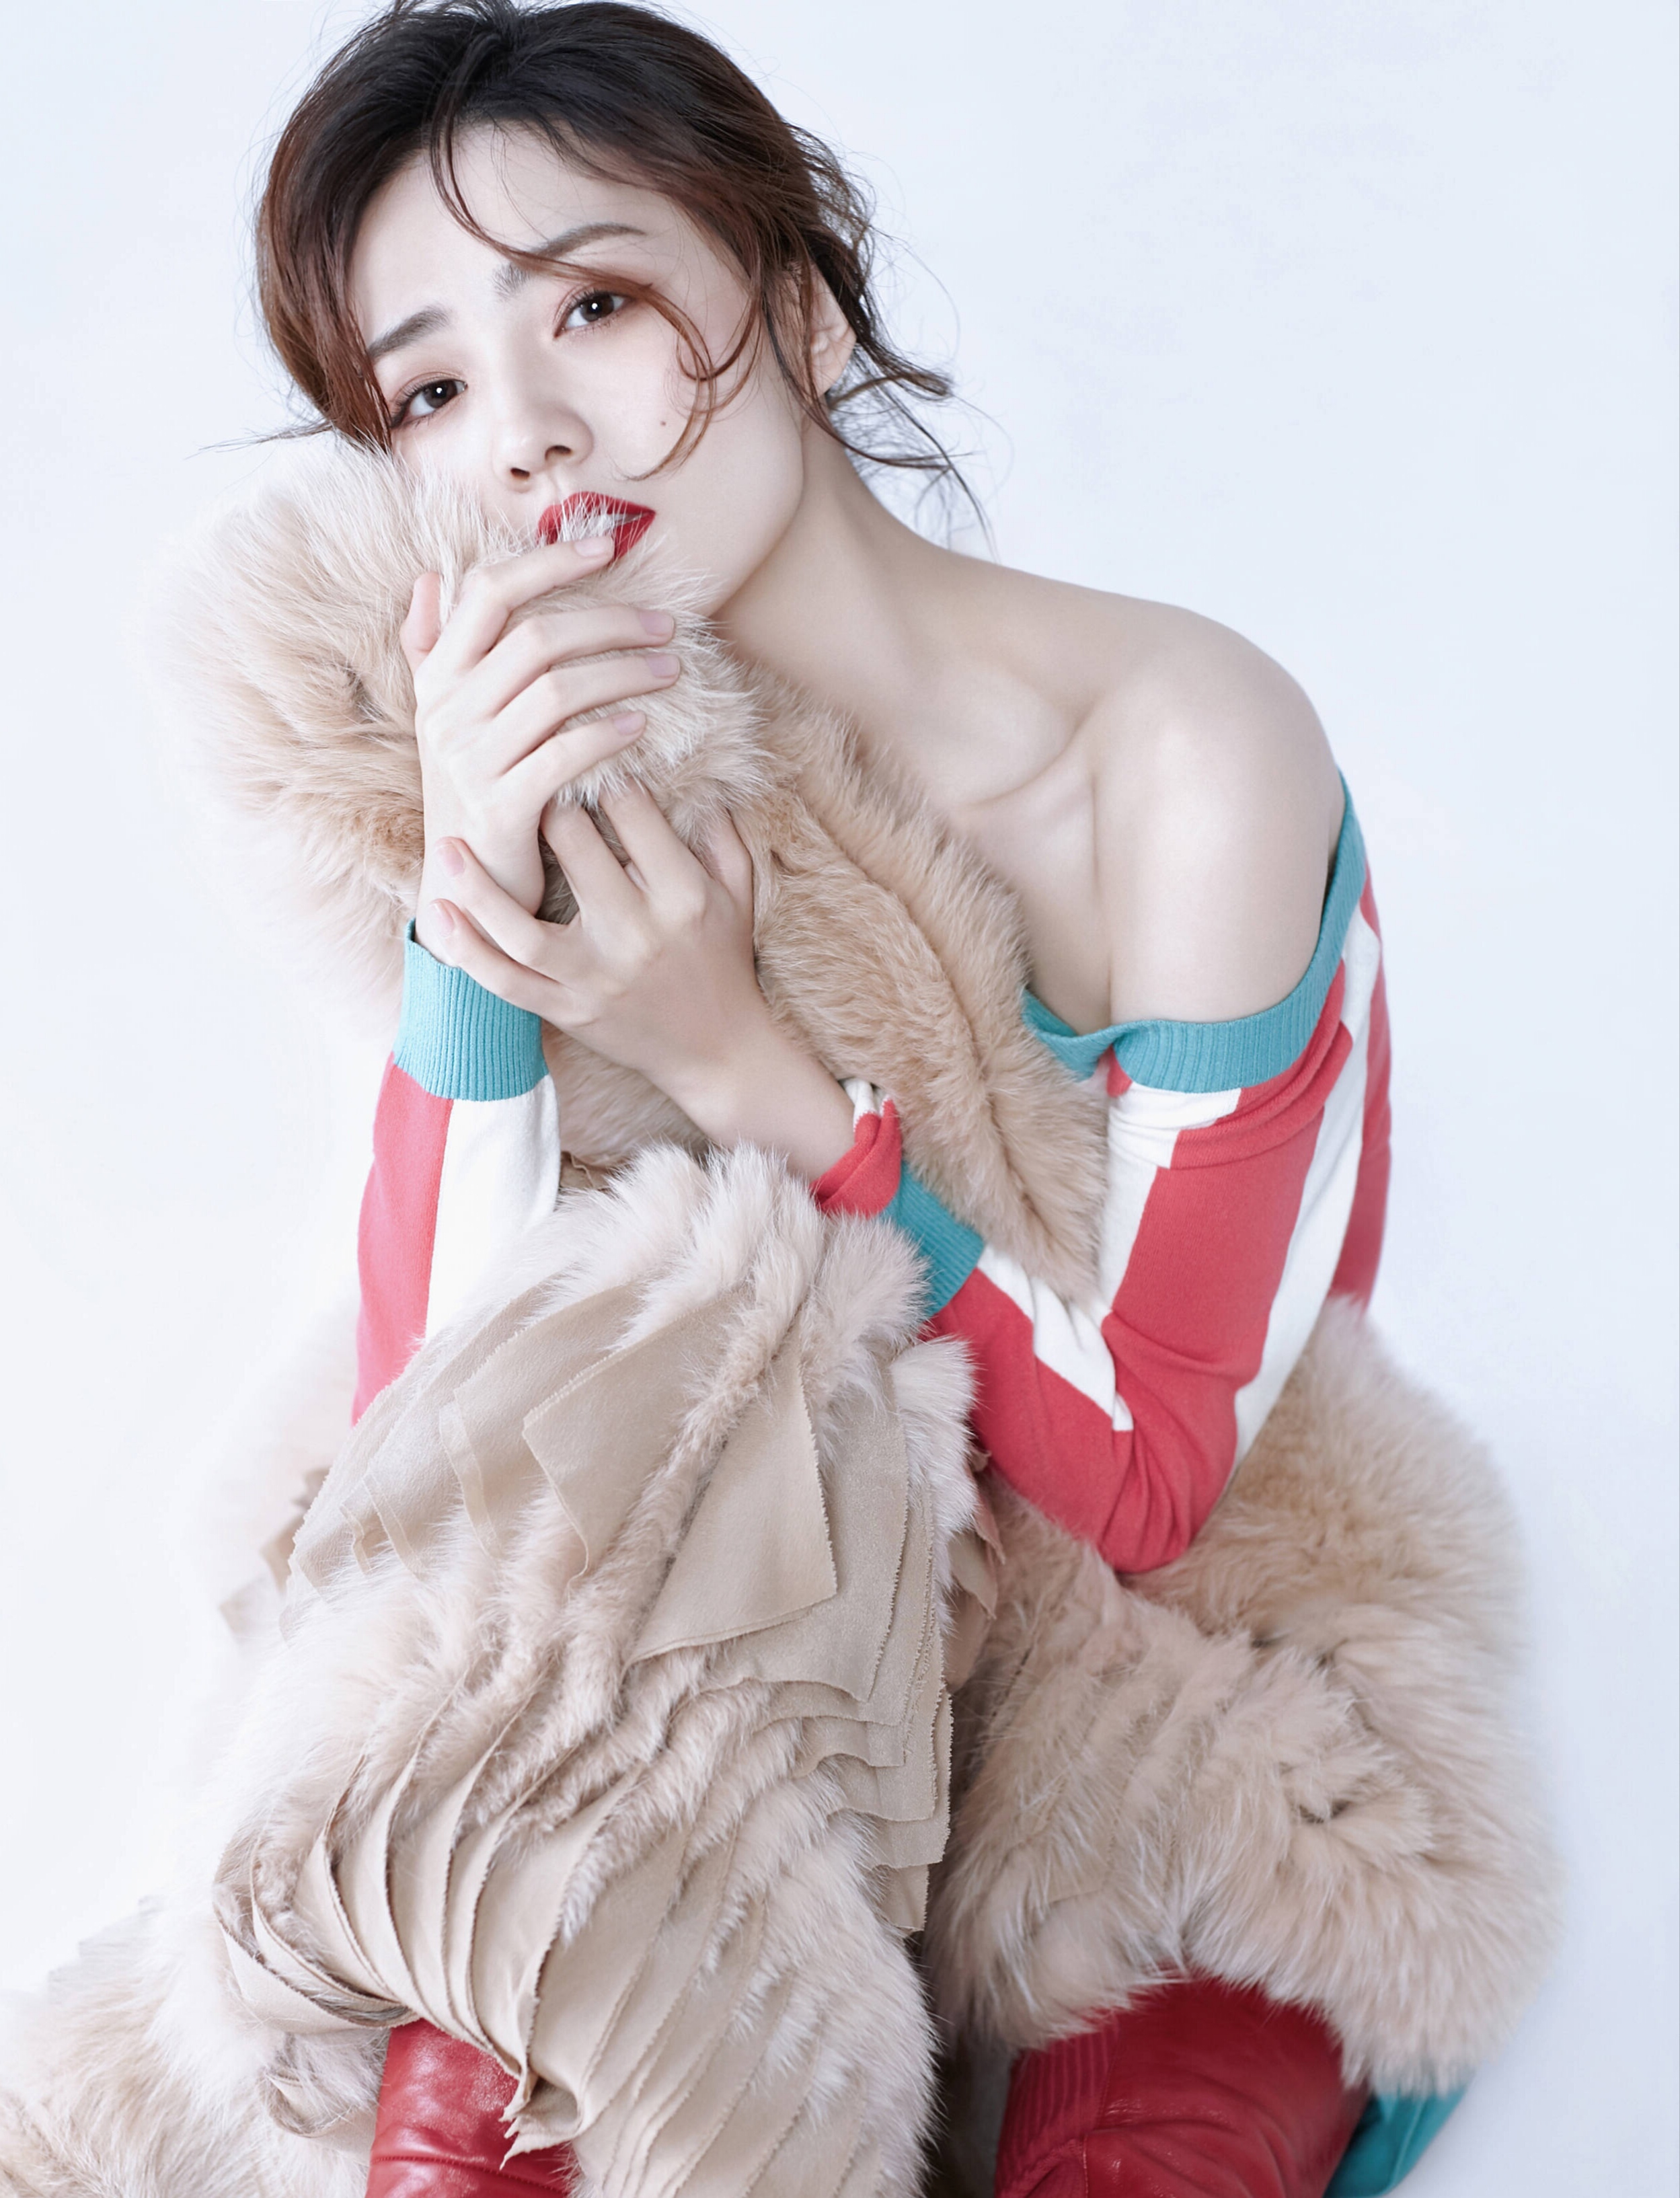 22岁的徐璐再登《时尚画报》封面,大红唇性感,散发着成熟女性的美